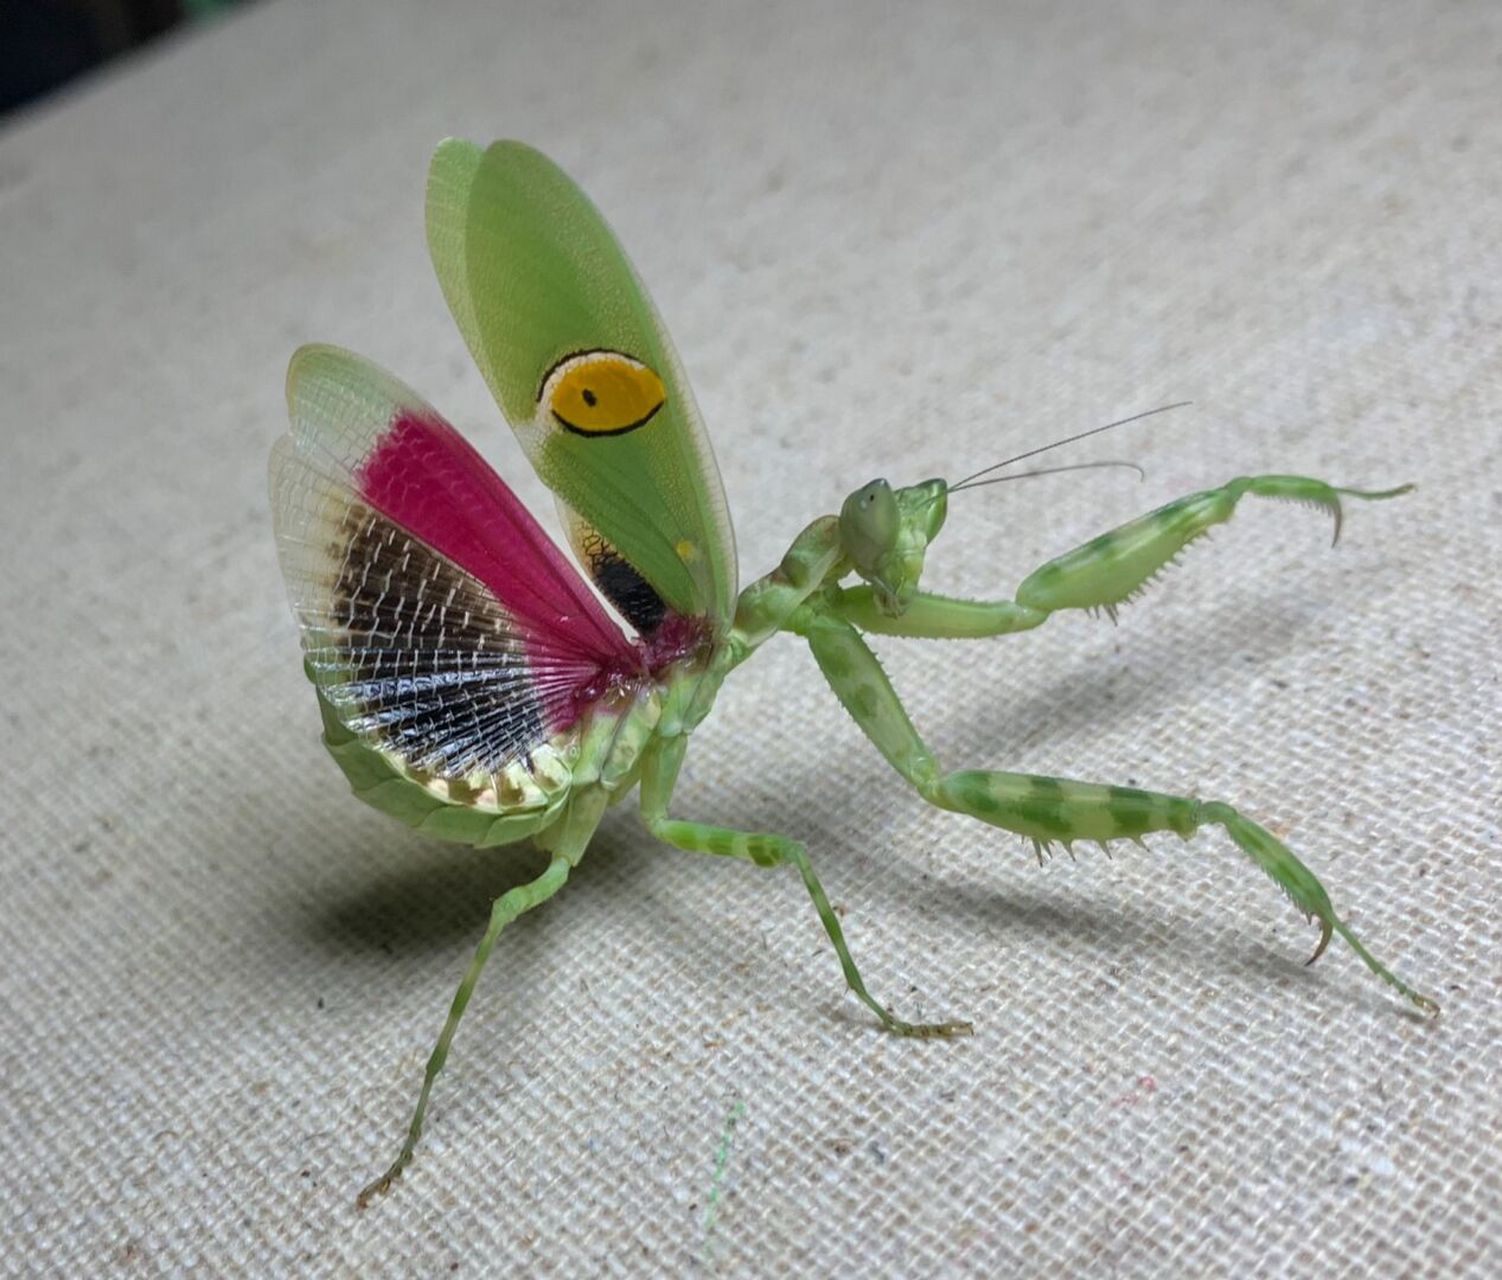 世界上最美的螳螂图片